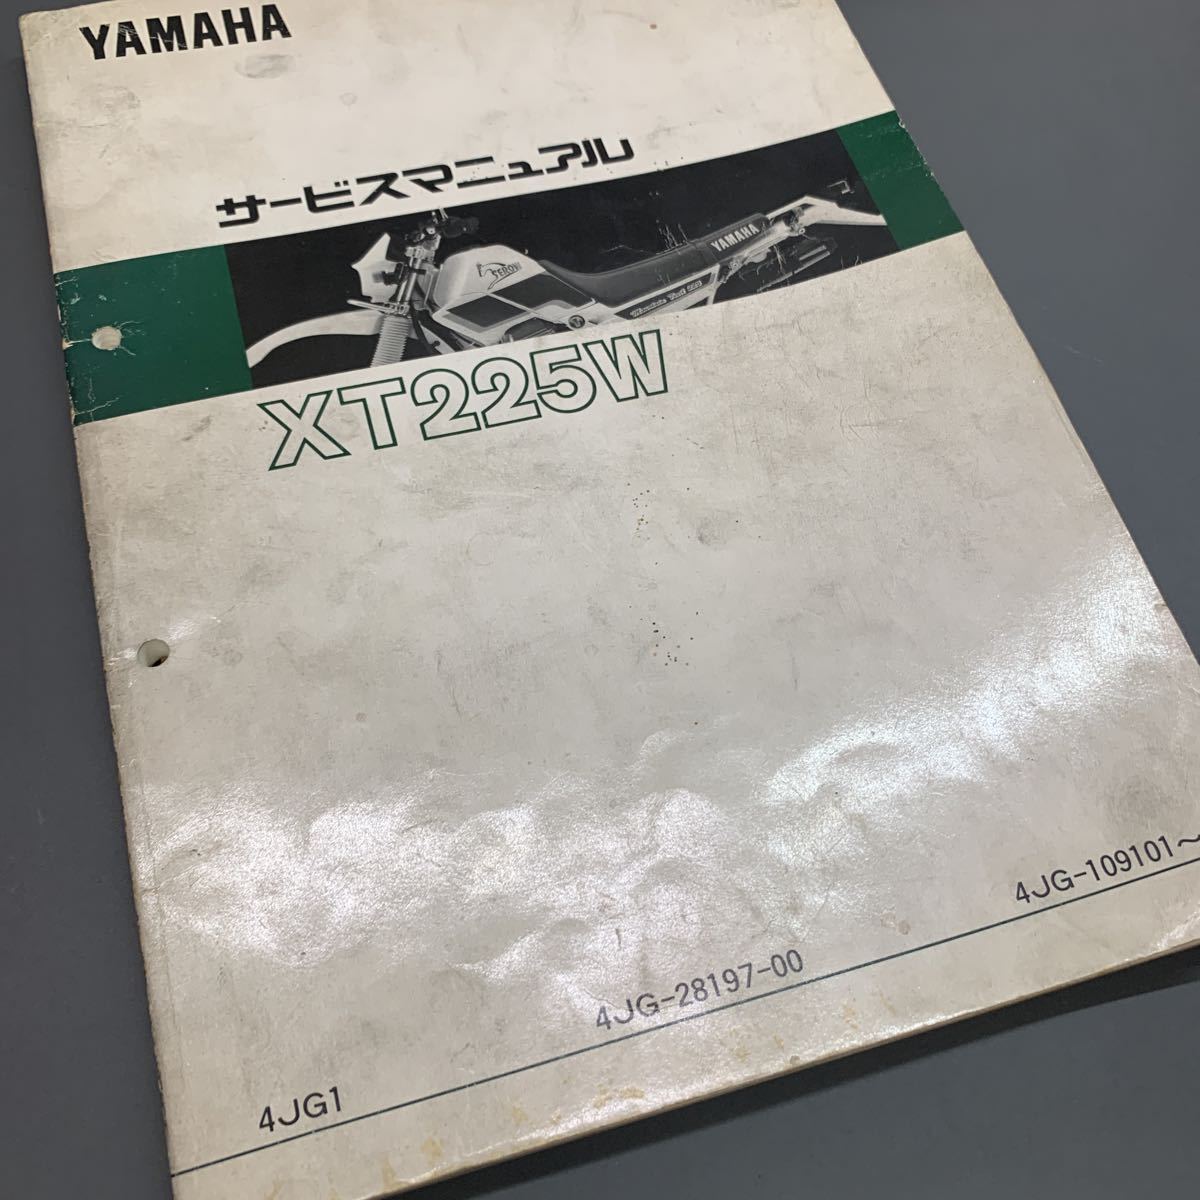 # бесплатная доставка # YAMAHA Yamaha руководство по обслуживанию XT225W 4JG TRAIL Serow Yamaha двигатель акционерное общество #